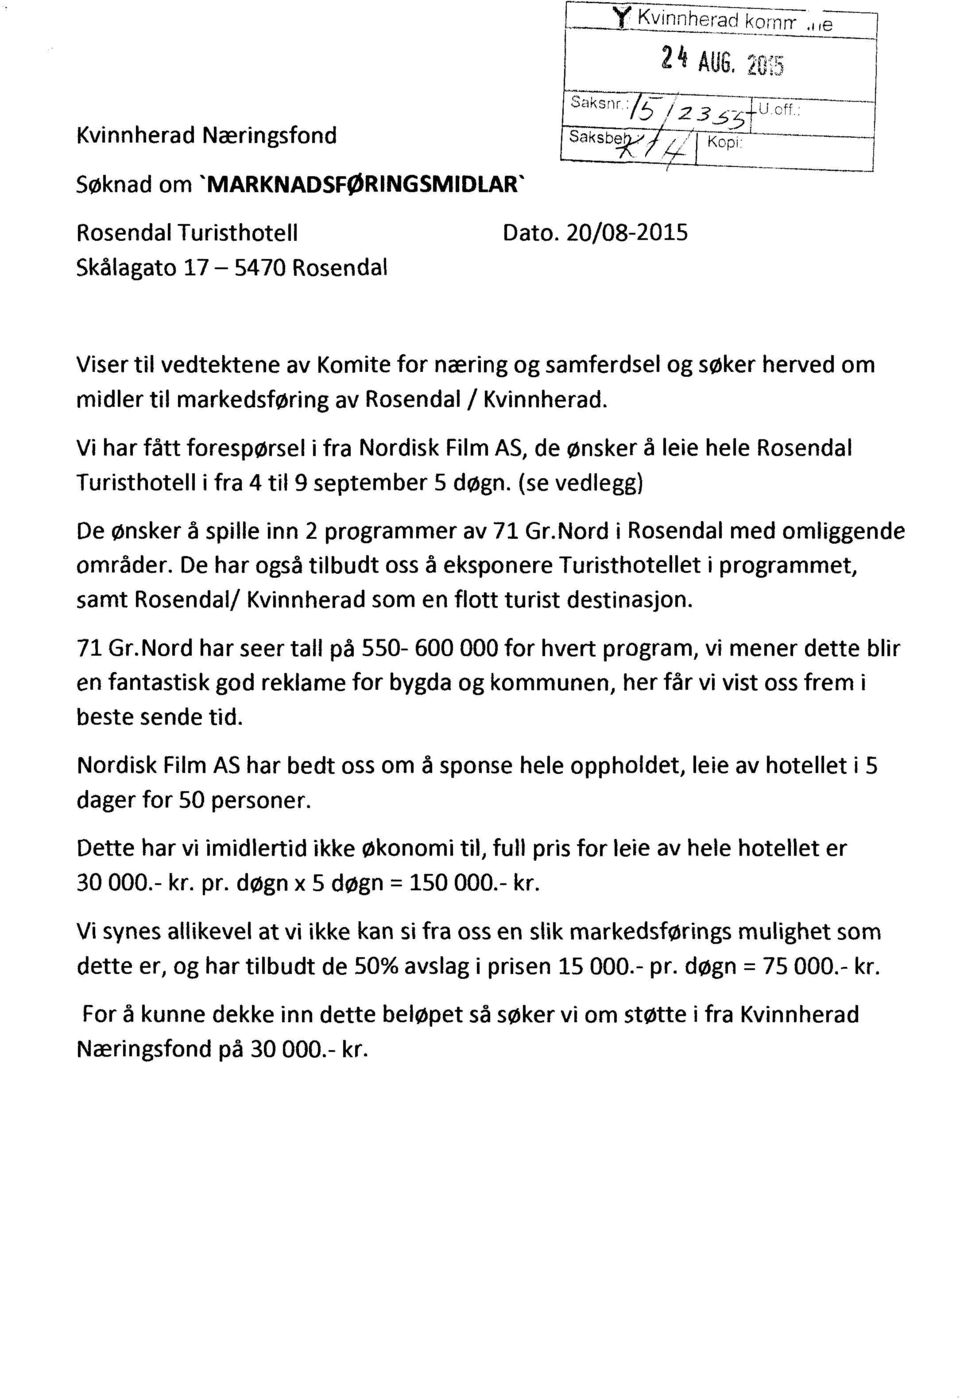 Vi har fått forespørsel i fra Nordisk Film AS, de ønsker å leie hele Rosendal Turisthotell ifra 4 til 9 september 5 døgn. (se vedlegg) De ønsker å spille inn 2 programmer av 71 Gr.